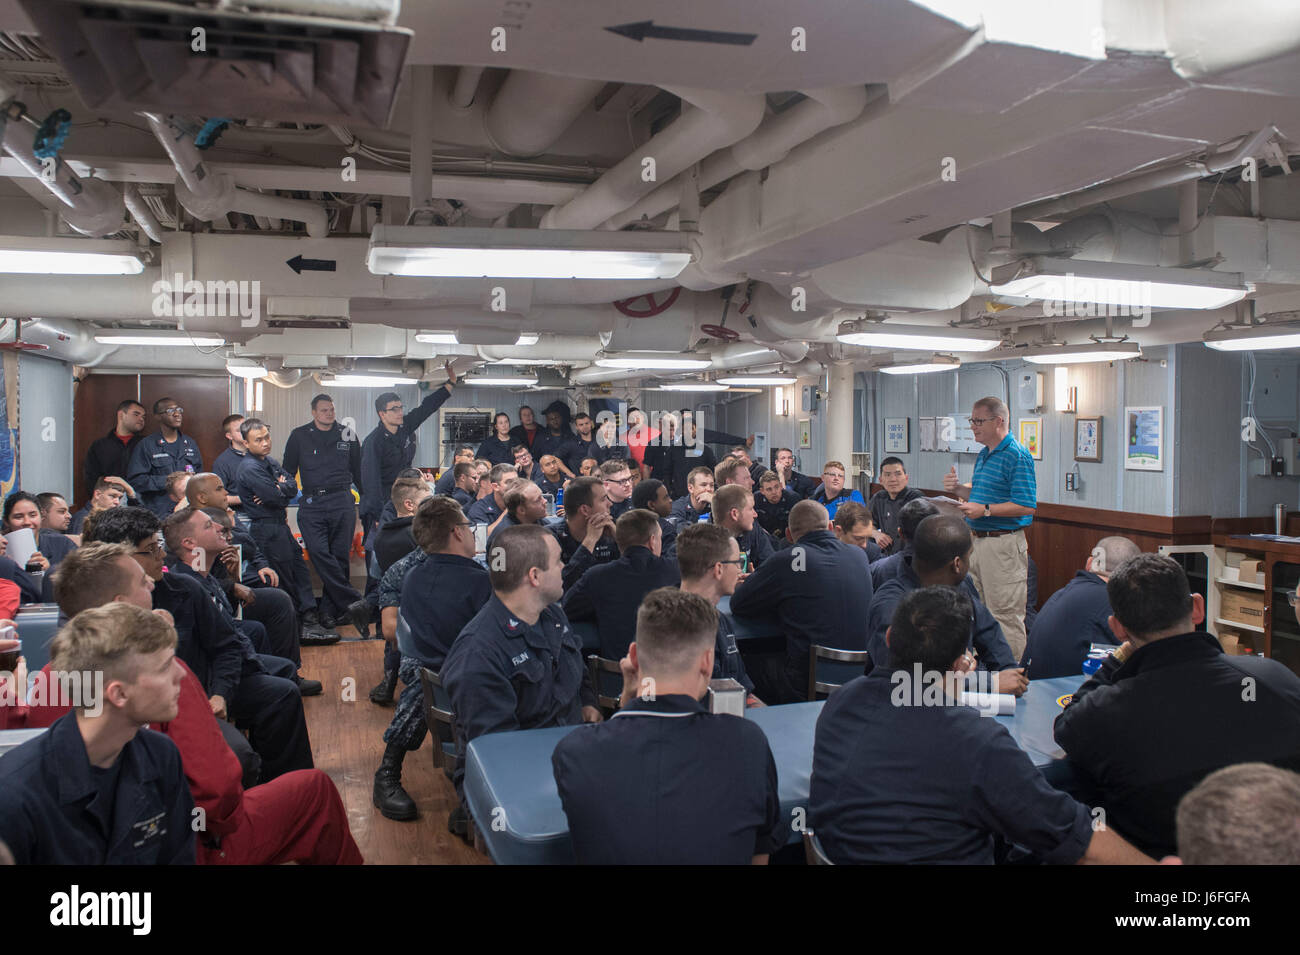 170515-N-MZ078-006 OCÉANO PACÍFICO (15 de mayo de 2017)- Los marineros reciben capacitación de sensibilización cultural para próximas visitas a puerto durante su despliegue a bordo de la clase Ticonderoga crucero de misiles guiados USS Lake Erie (CG 70). El lago Erie está actualmente en marcha en forma independiente sobre un despliegue en el Pacífico Occidental y el Oriente Medio en apoyo de operaciones de seguridad marítima y el teatro los esfuerzos de cooperación. (Ee.Uu. Navy photo by Mass Communication Specialist Seaman Lucas T. Hans/liberado) Foto de stock